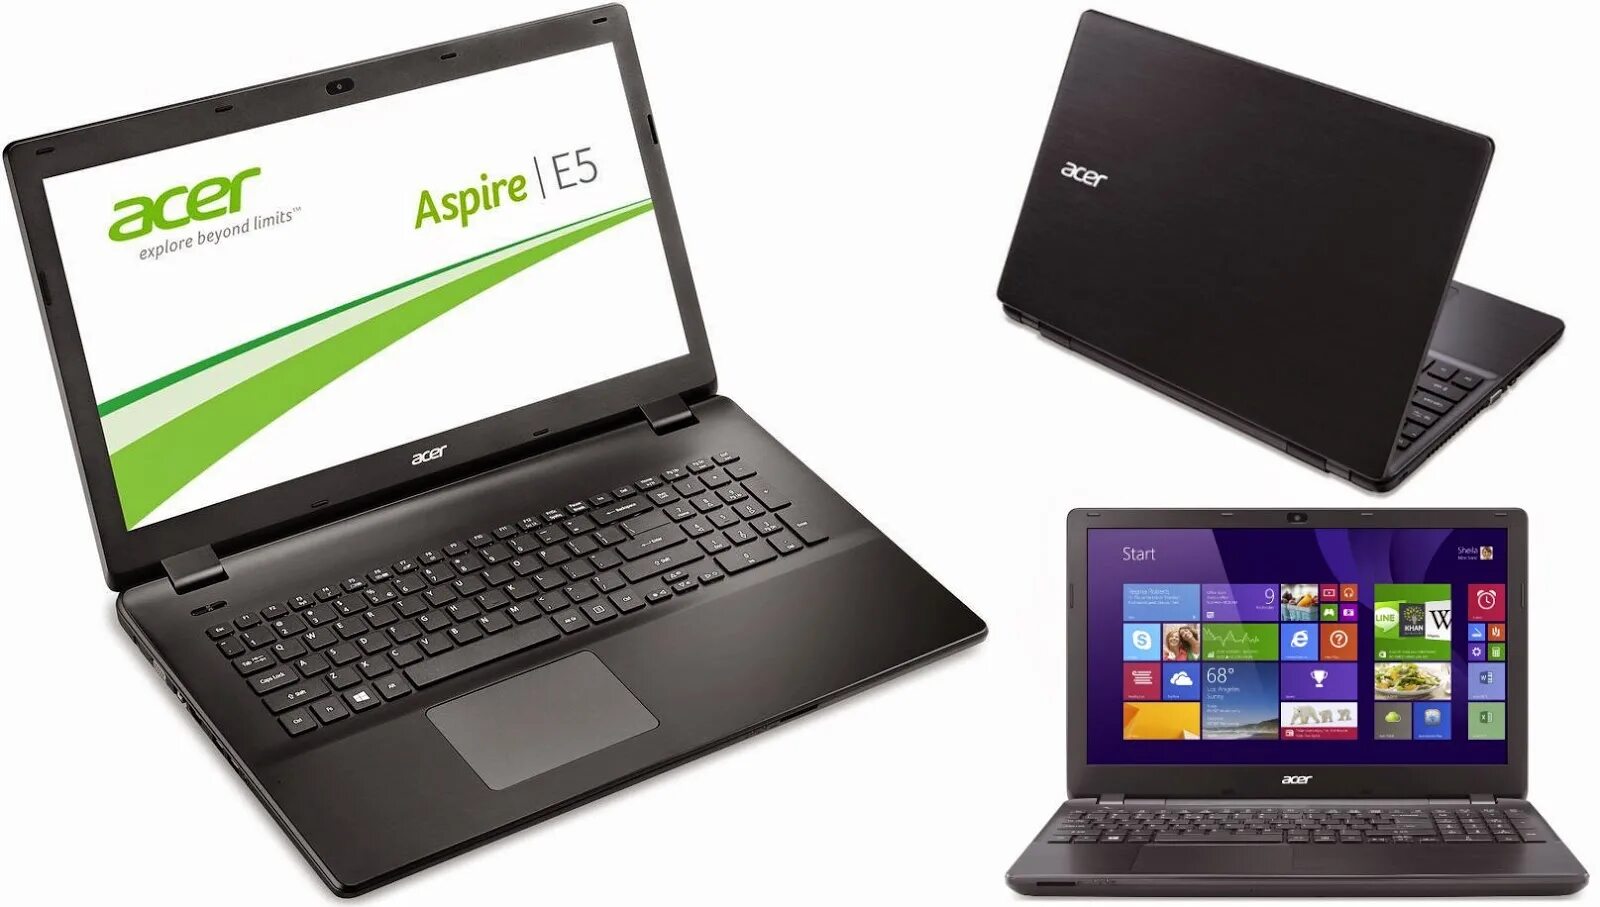 Acer aspire 521. Acer e5 521g. Acer e5-521. Acer Aspire e5-521-22hd. Acer Aspire e15 start.